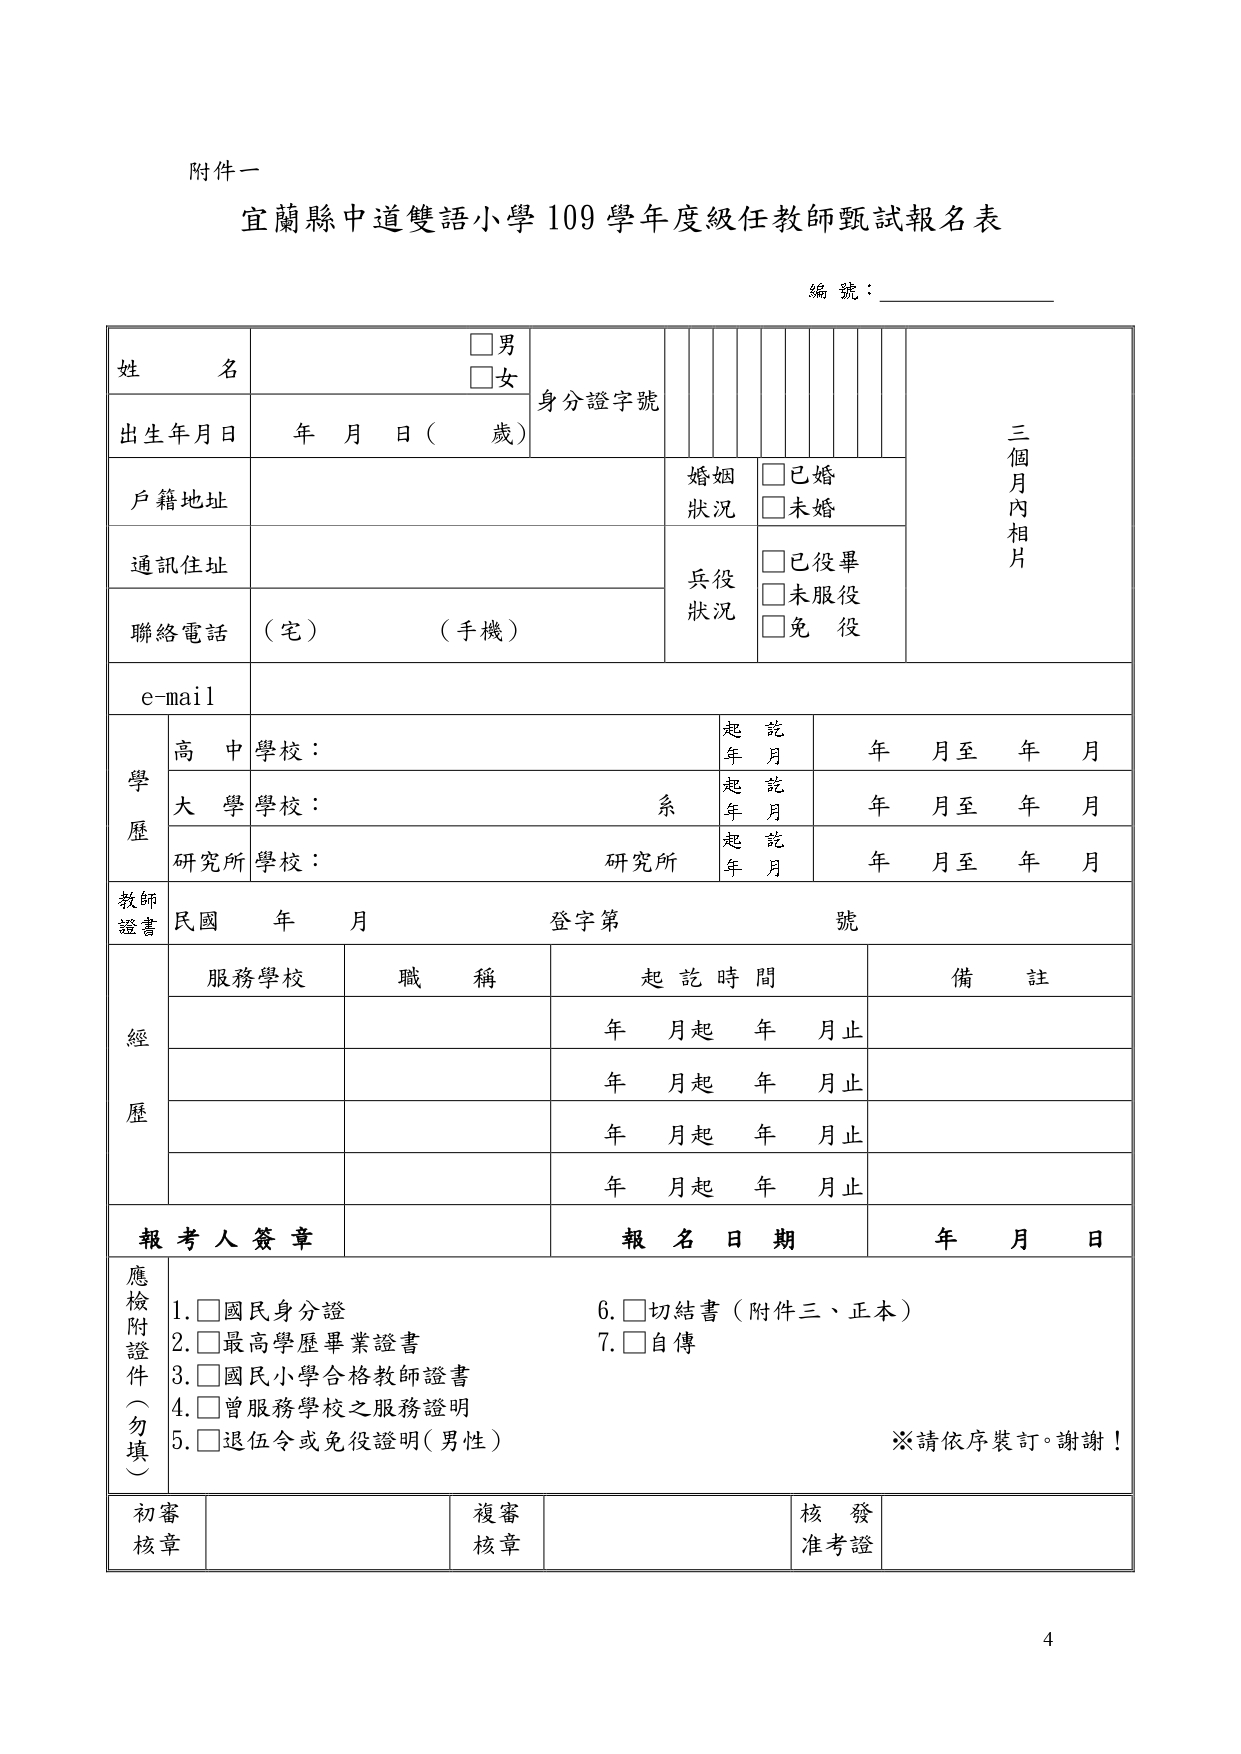 109中道小學教甄簡章3 1 page 0004